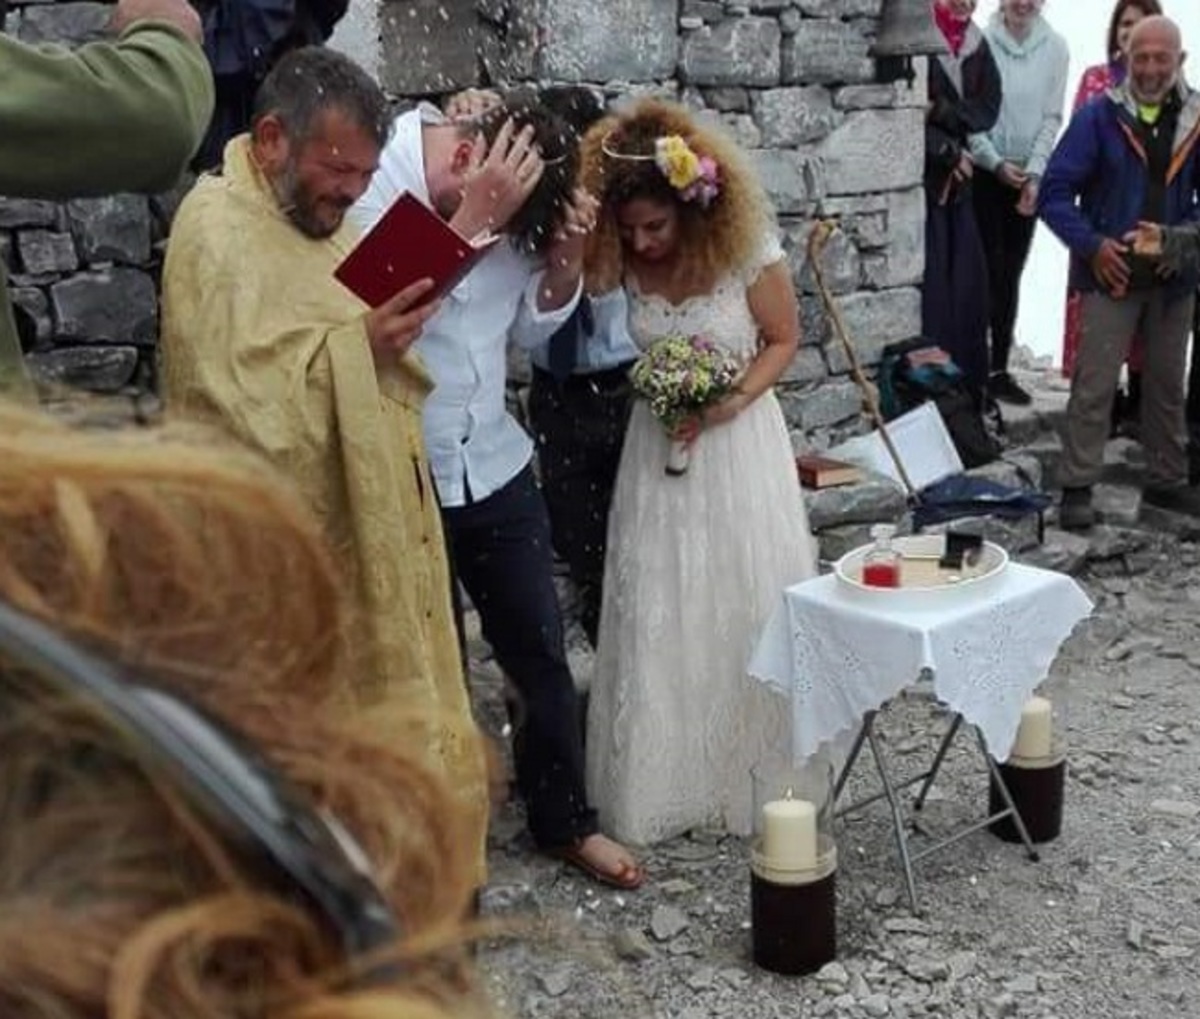 Μεσσηνία: Ο γαμπρός και η νύφη στα σύννεφα – Ο ανατρεπτικός γάμος στον Ταϋγετο – Με μπουφάν οι καλεσμένοι [pics]